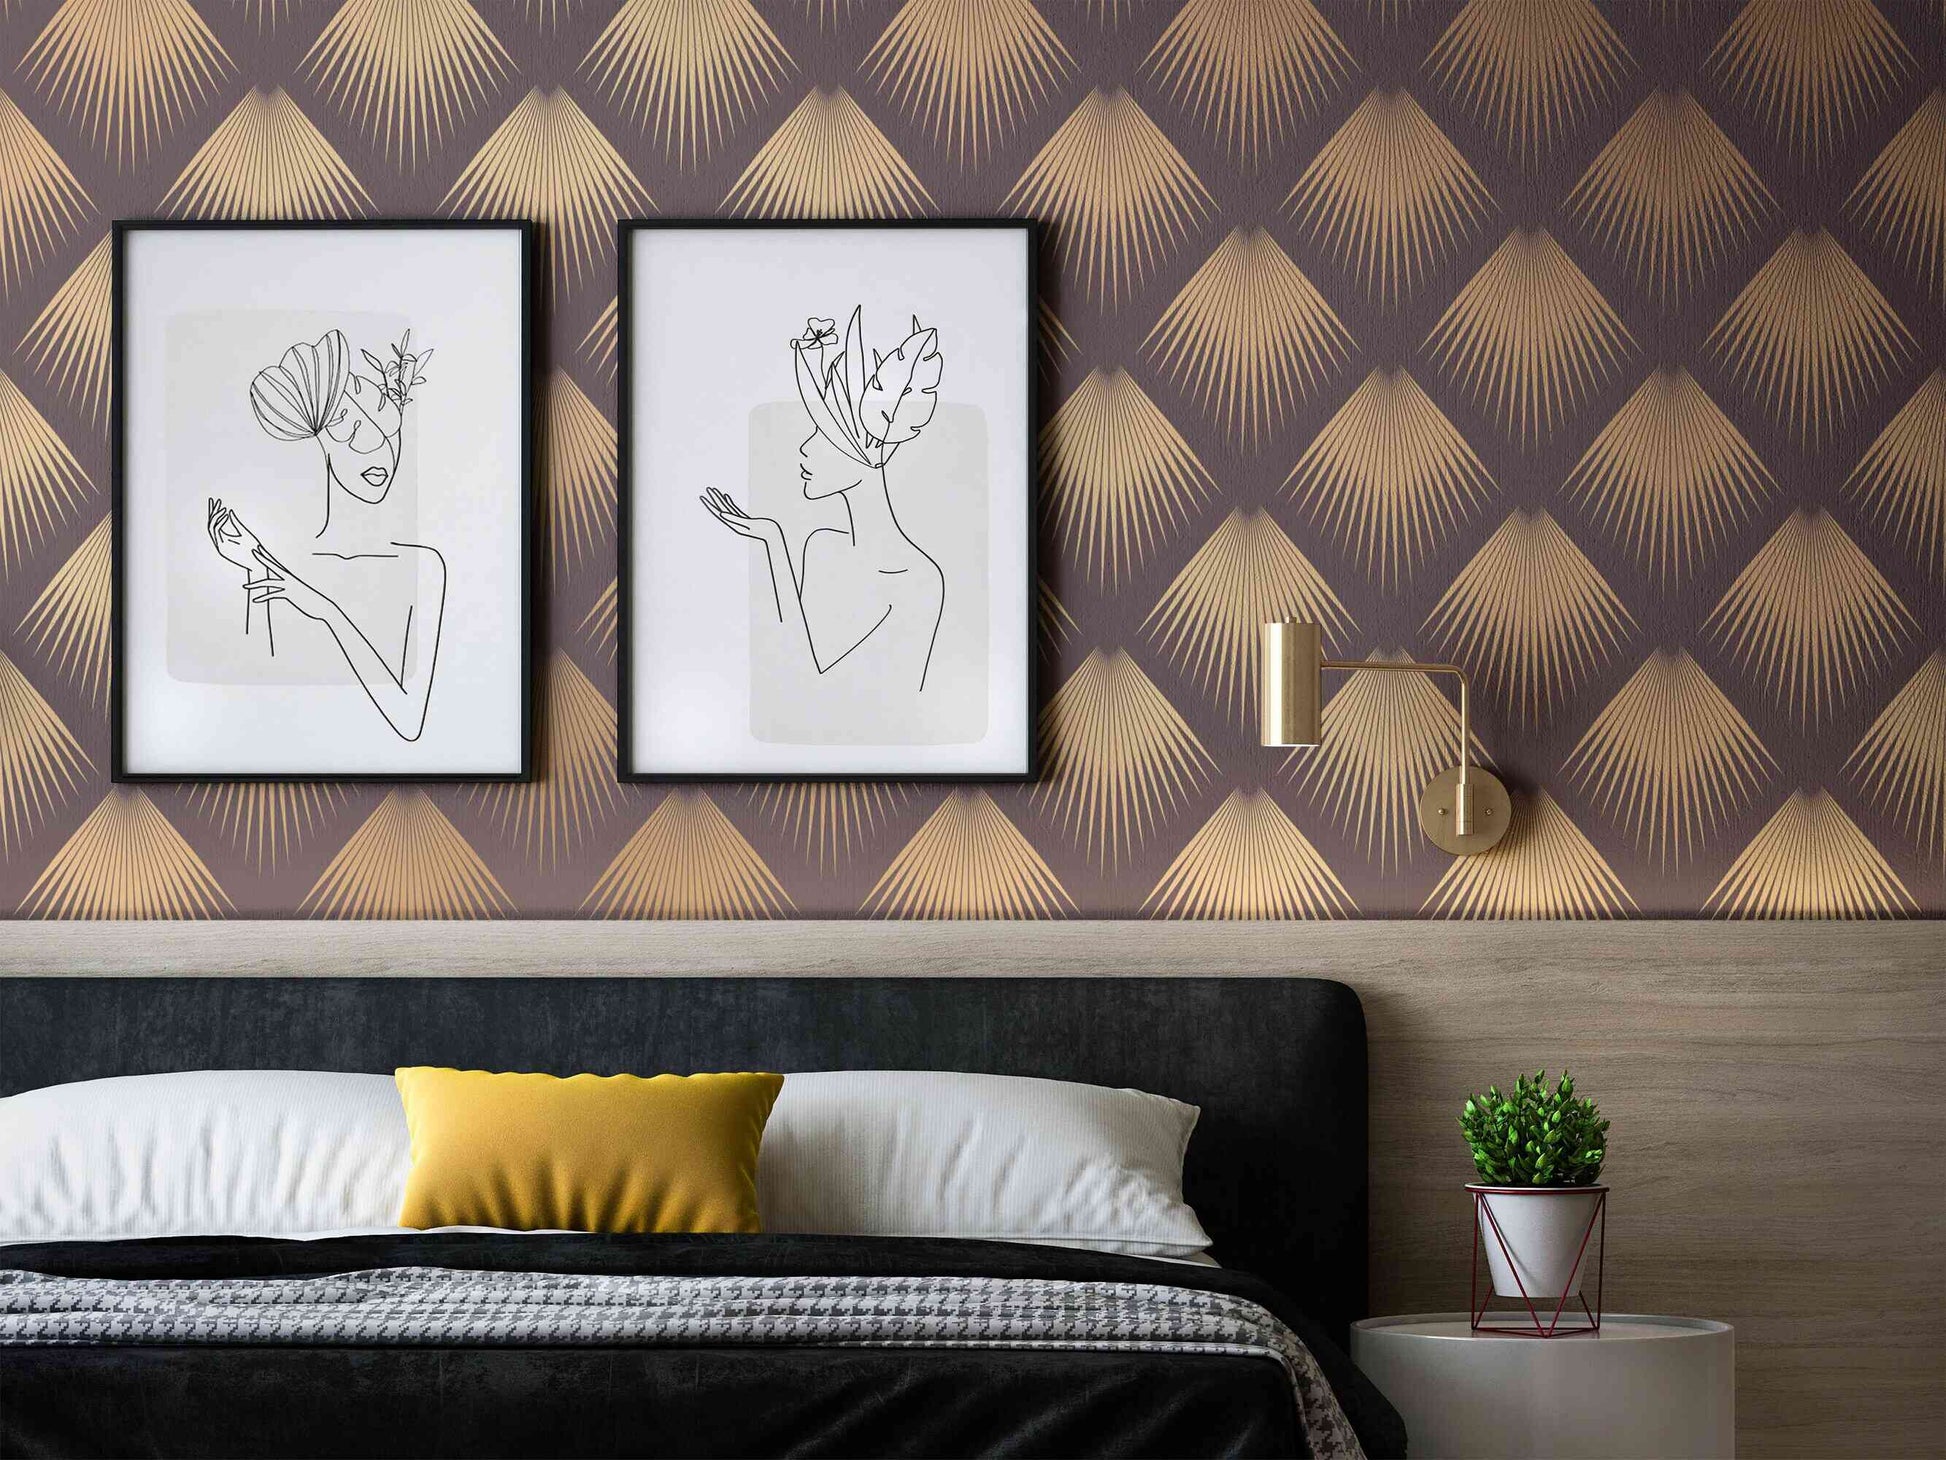 Elegant bedroom mural wallpaper creating a luxurious atmosphere.